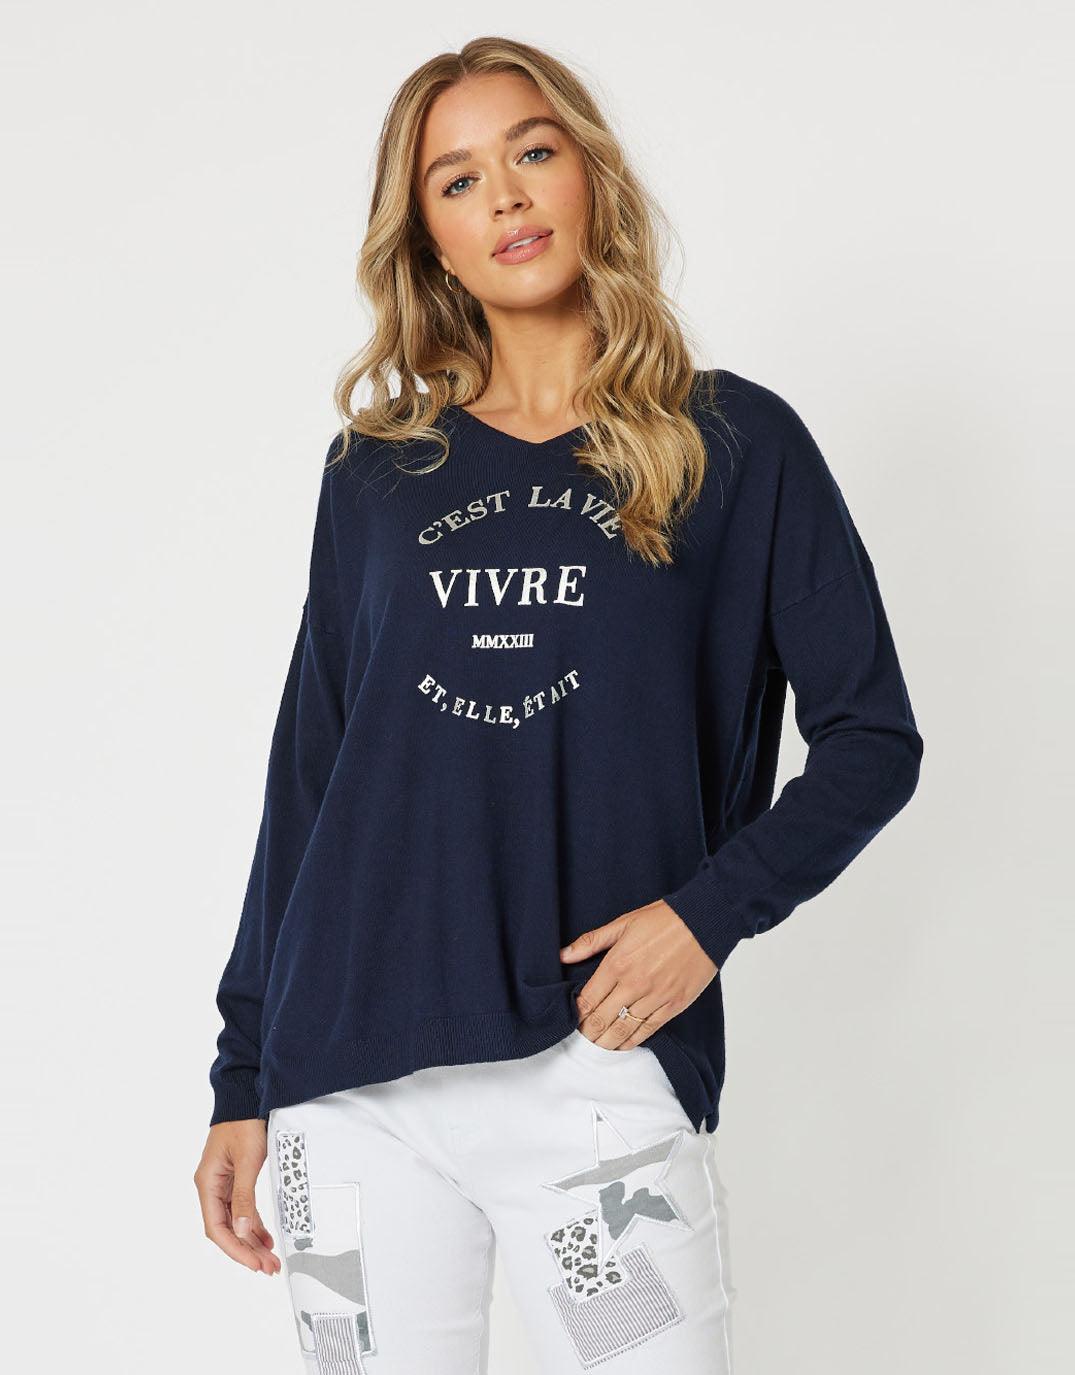 Threadz - Cest La Vie Knit - Navy - White & Co Living Knitwear